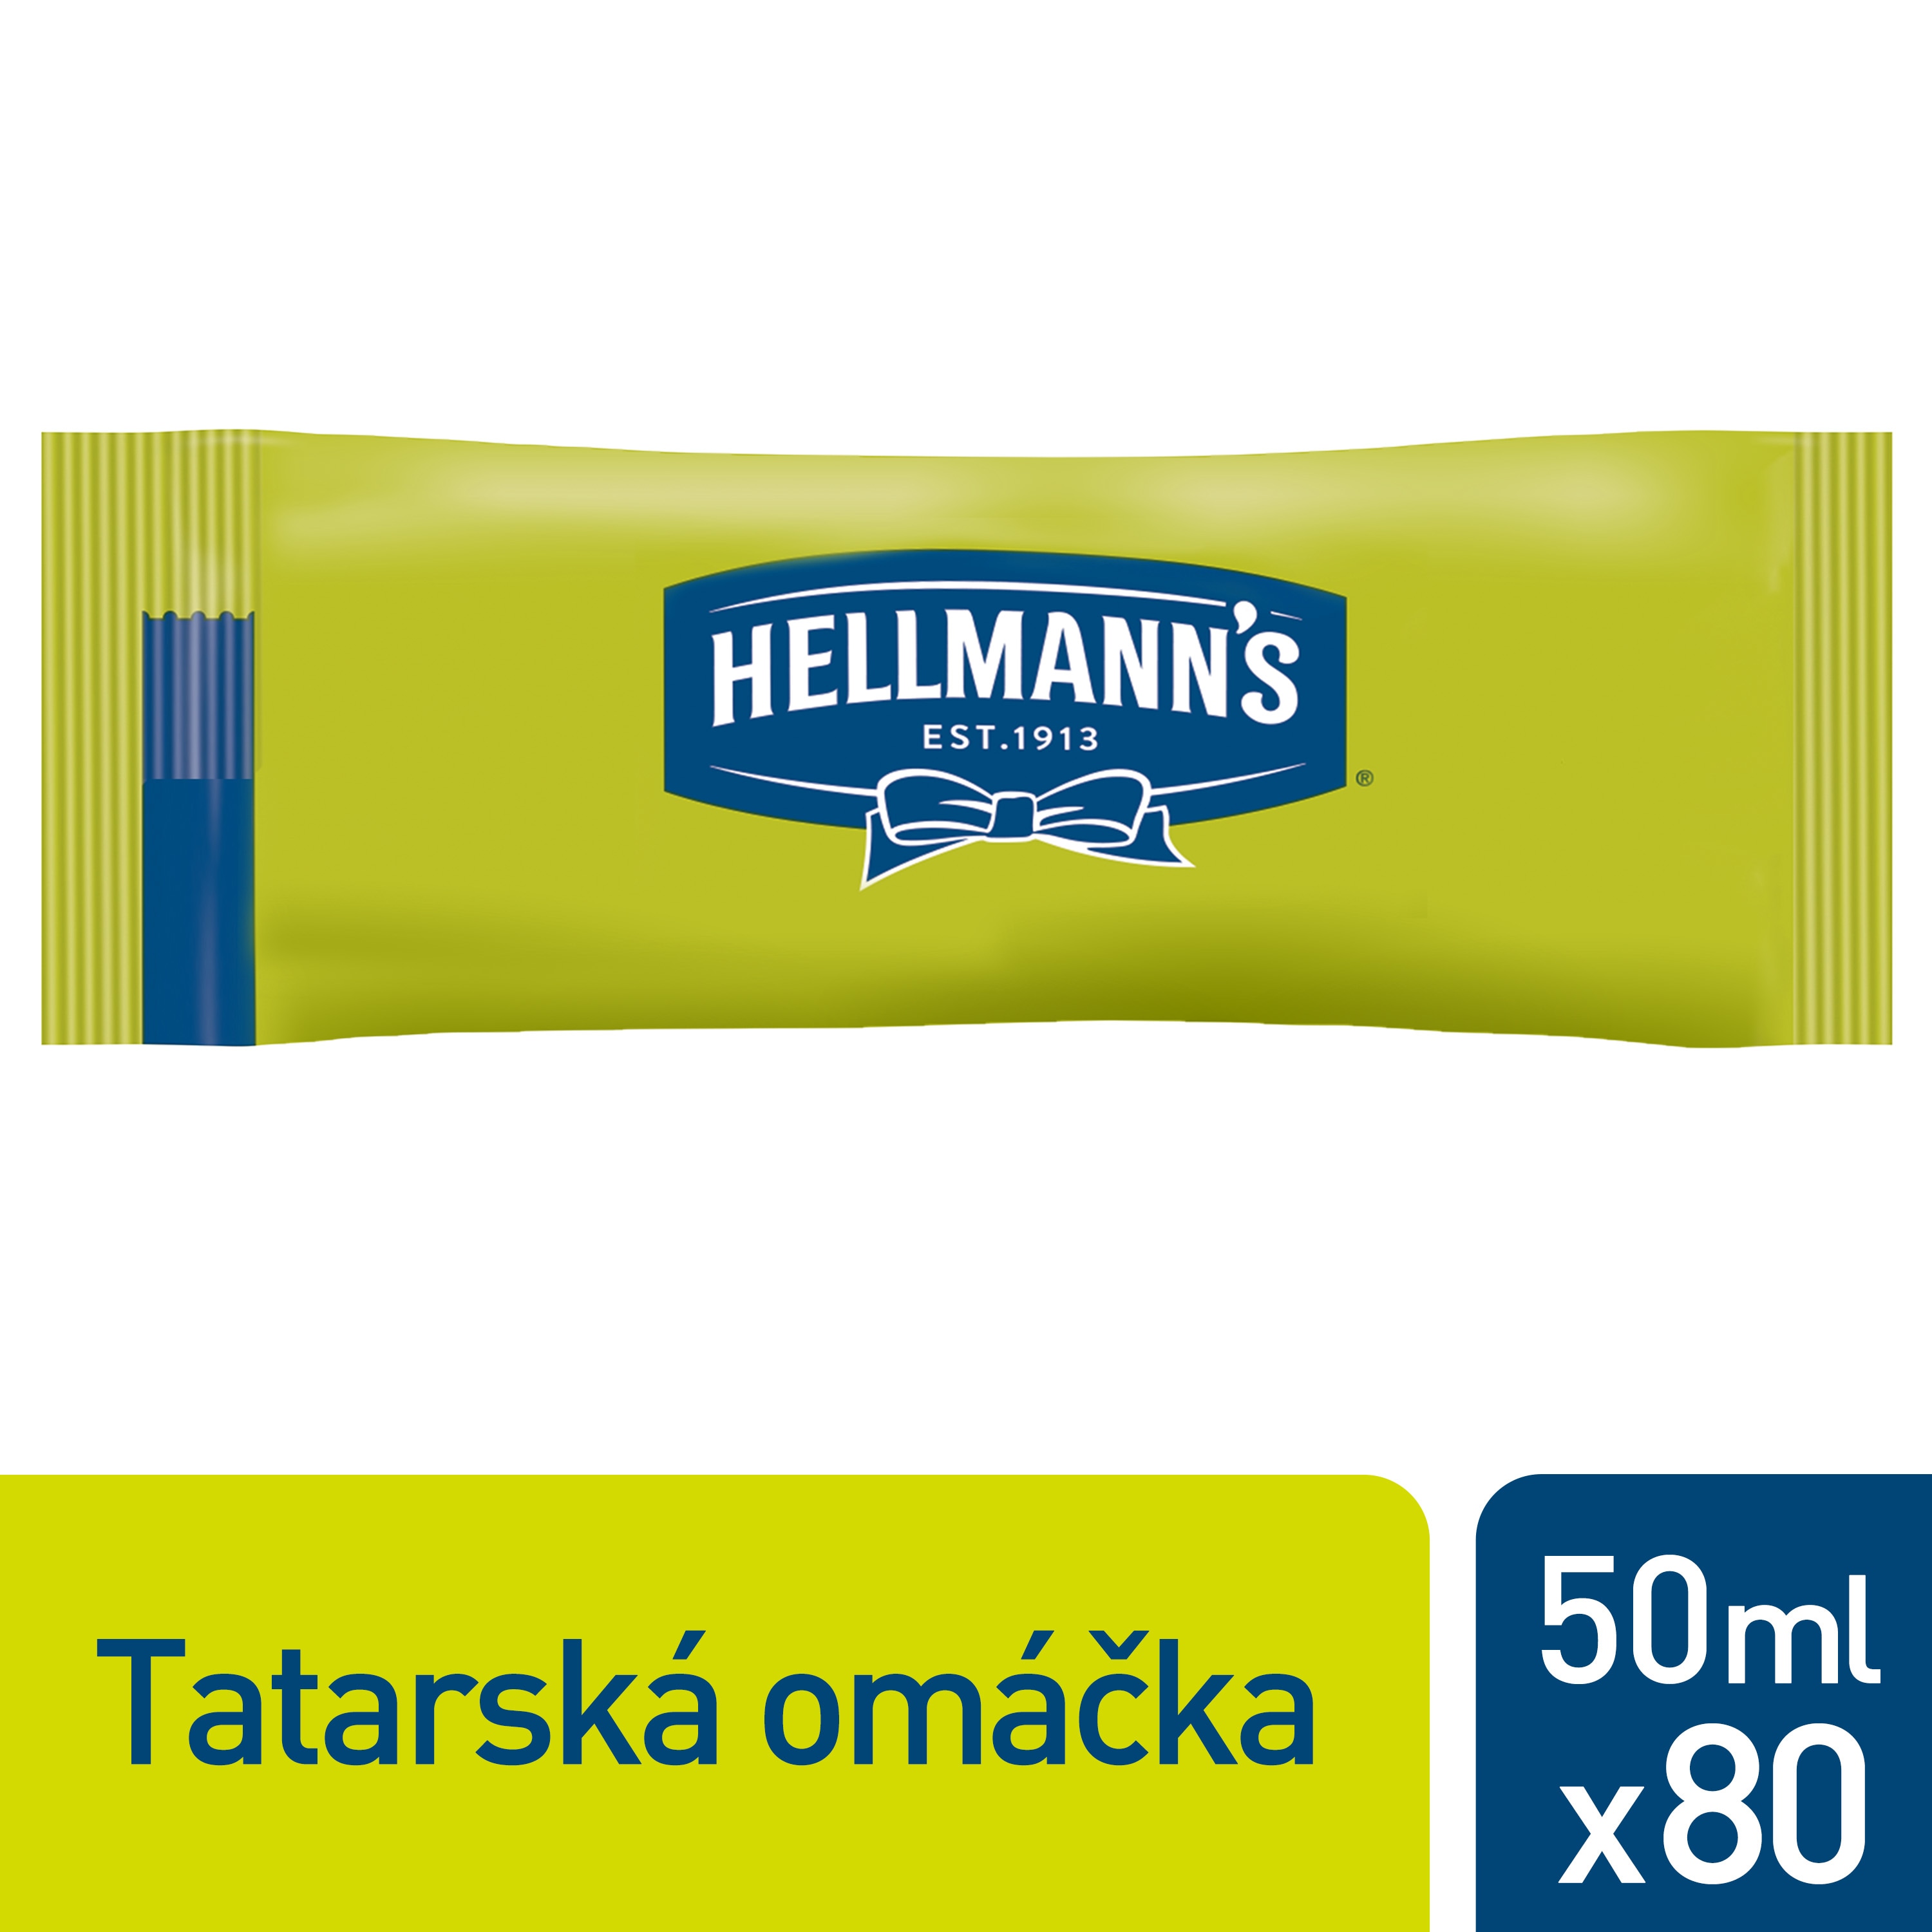 Hellmann's Tatarská omáčka porcovaná 50 ml - Velmi oblíbená tatarská omáčka.